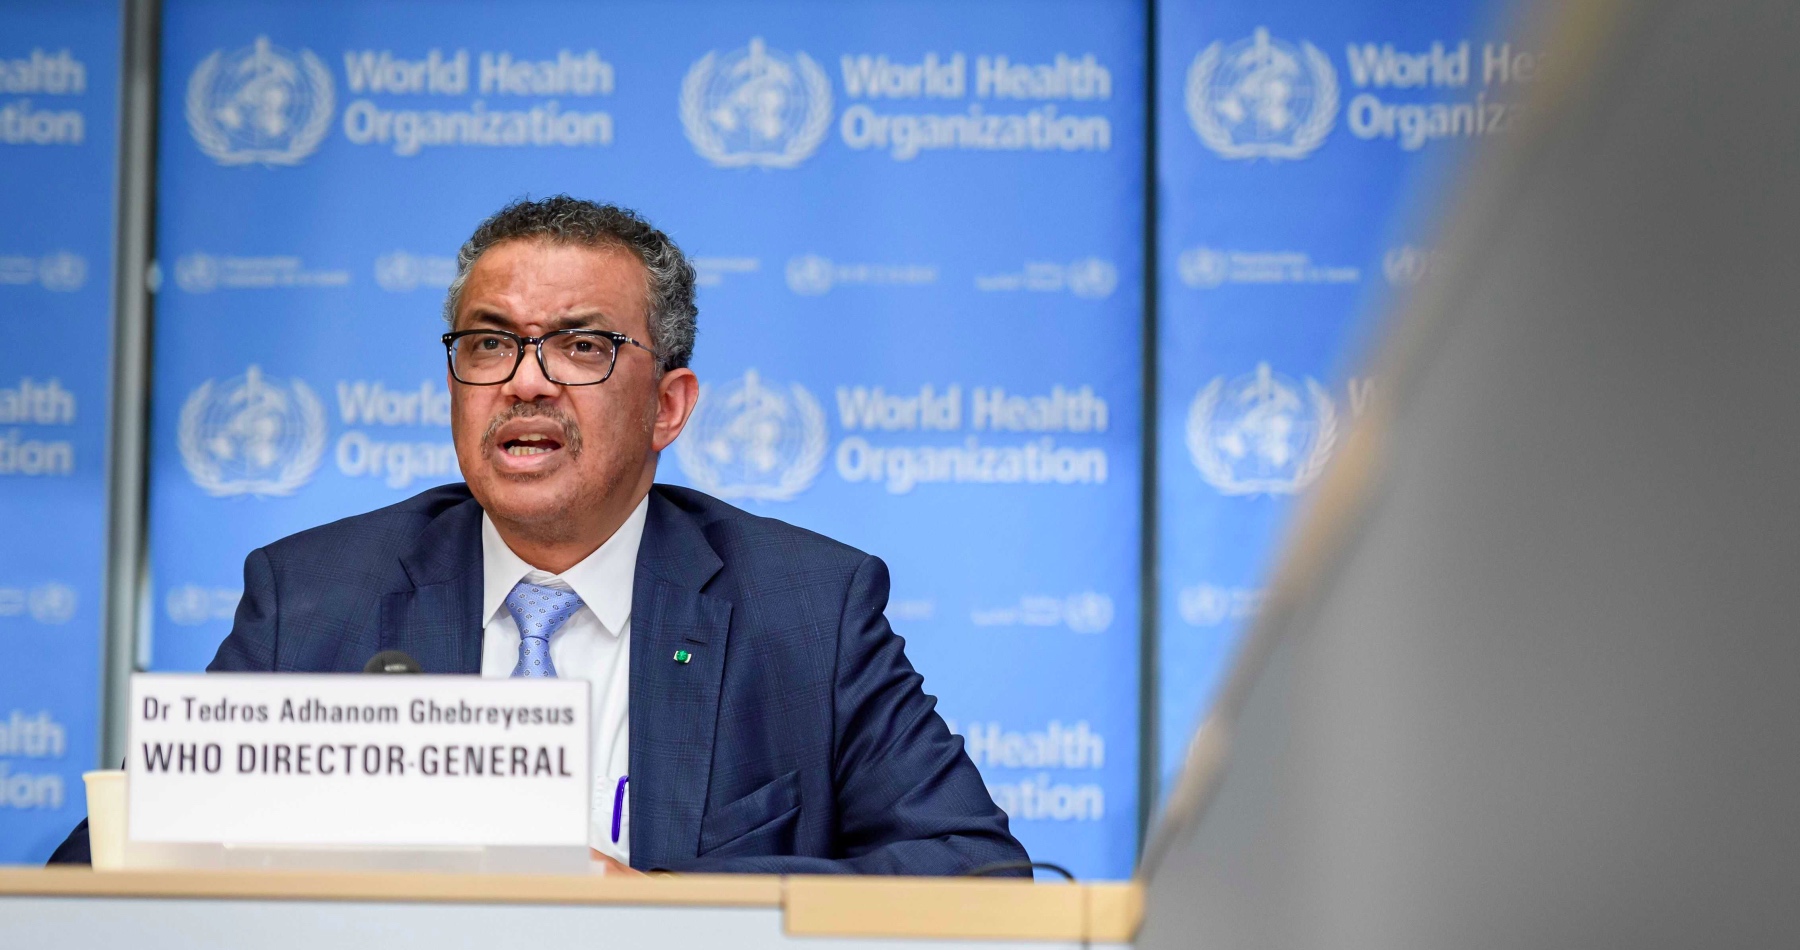 Šéf WHO Tedros apeloval na uzavretie celosvetovej dohody o zvládaní budúcich pandémií.  Dokument dáva Svetovej zdravotníckej organizácii neakceptovateľne obrovské právomoci